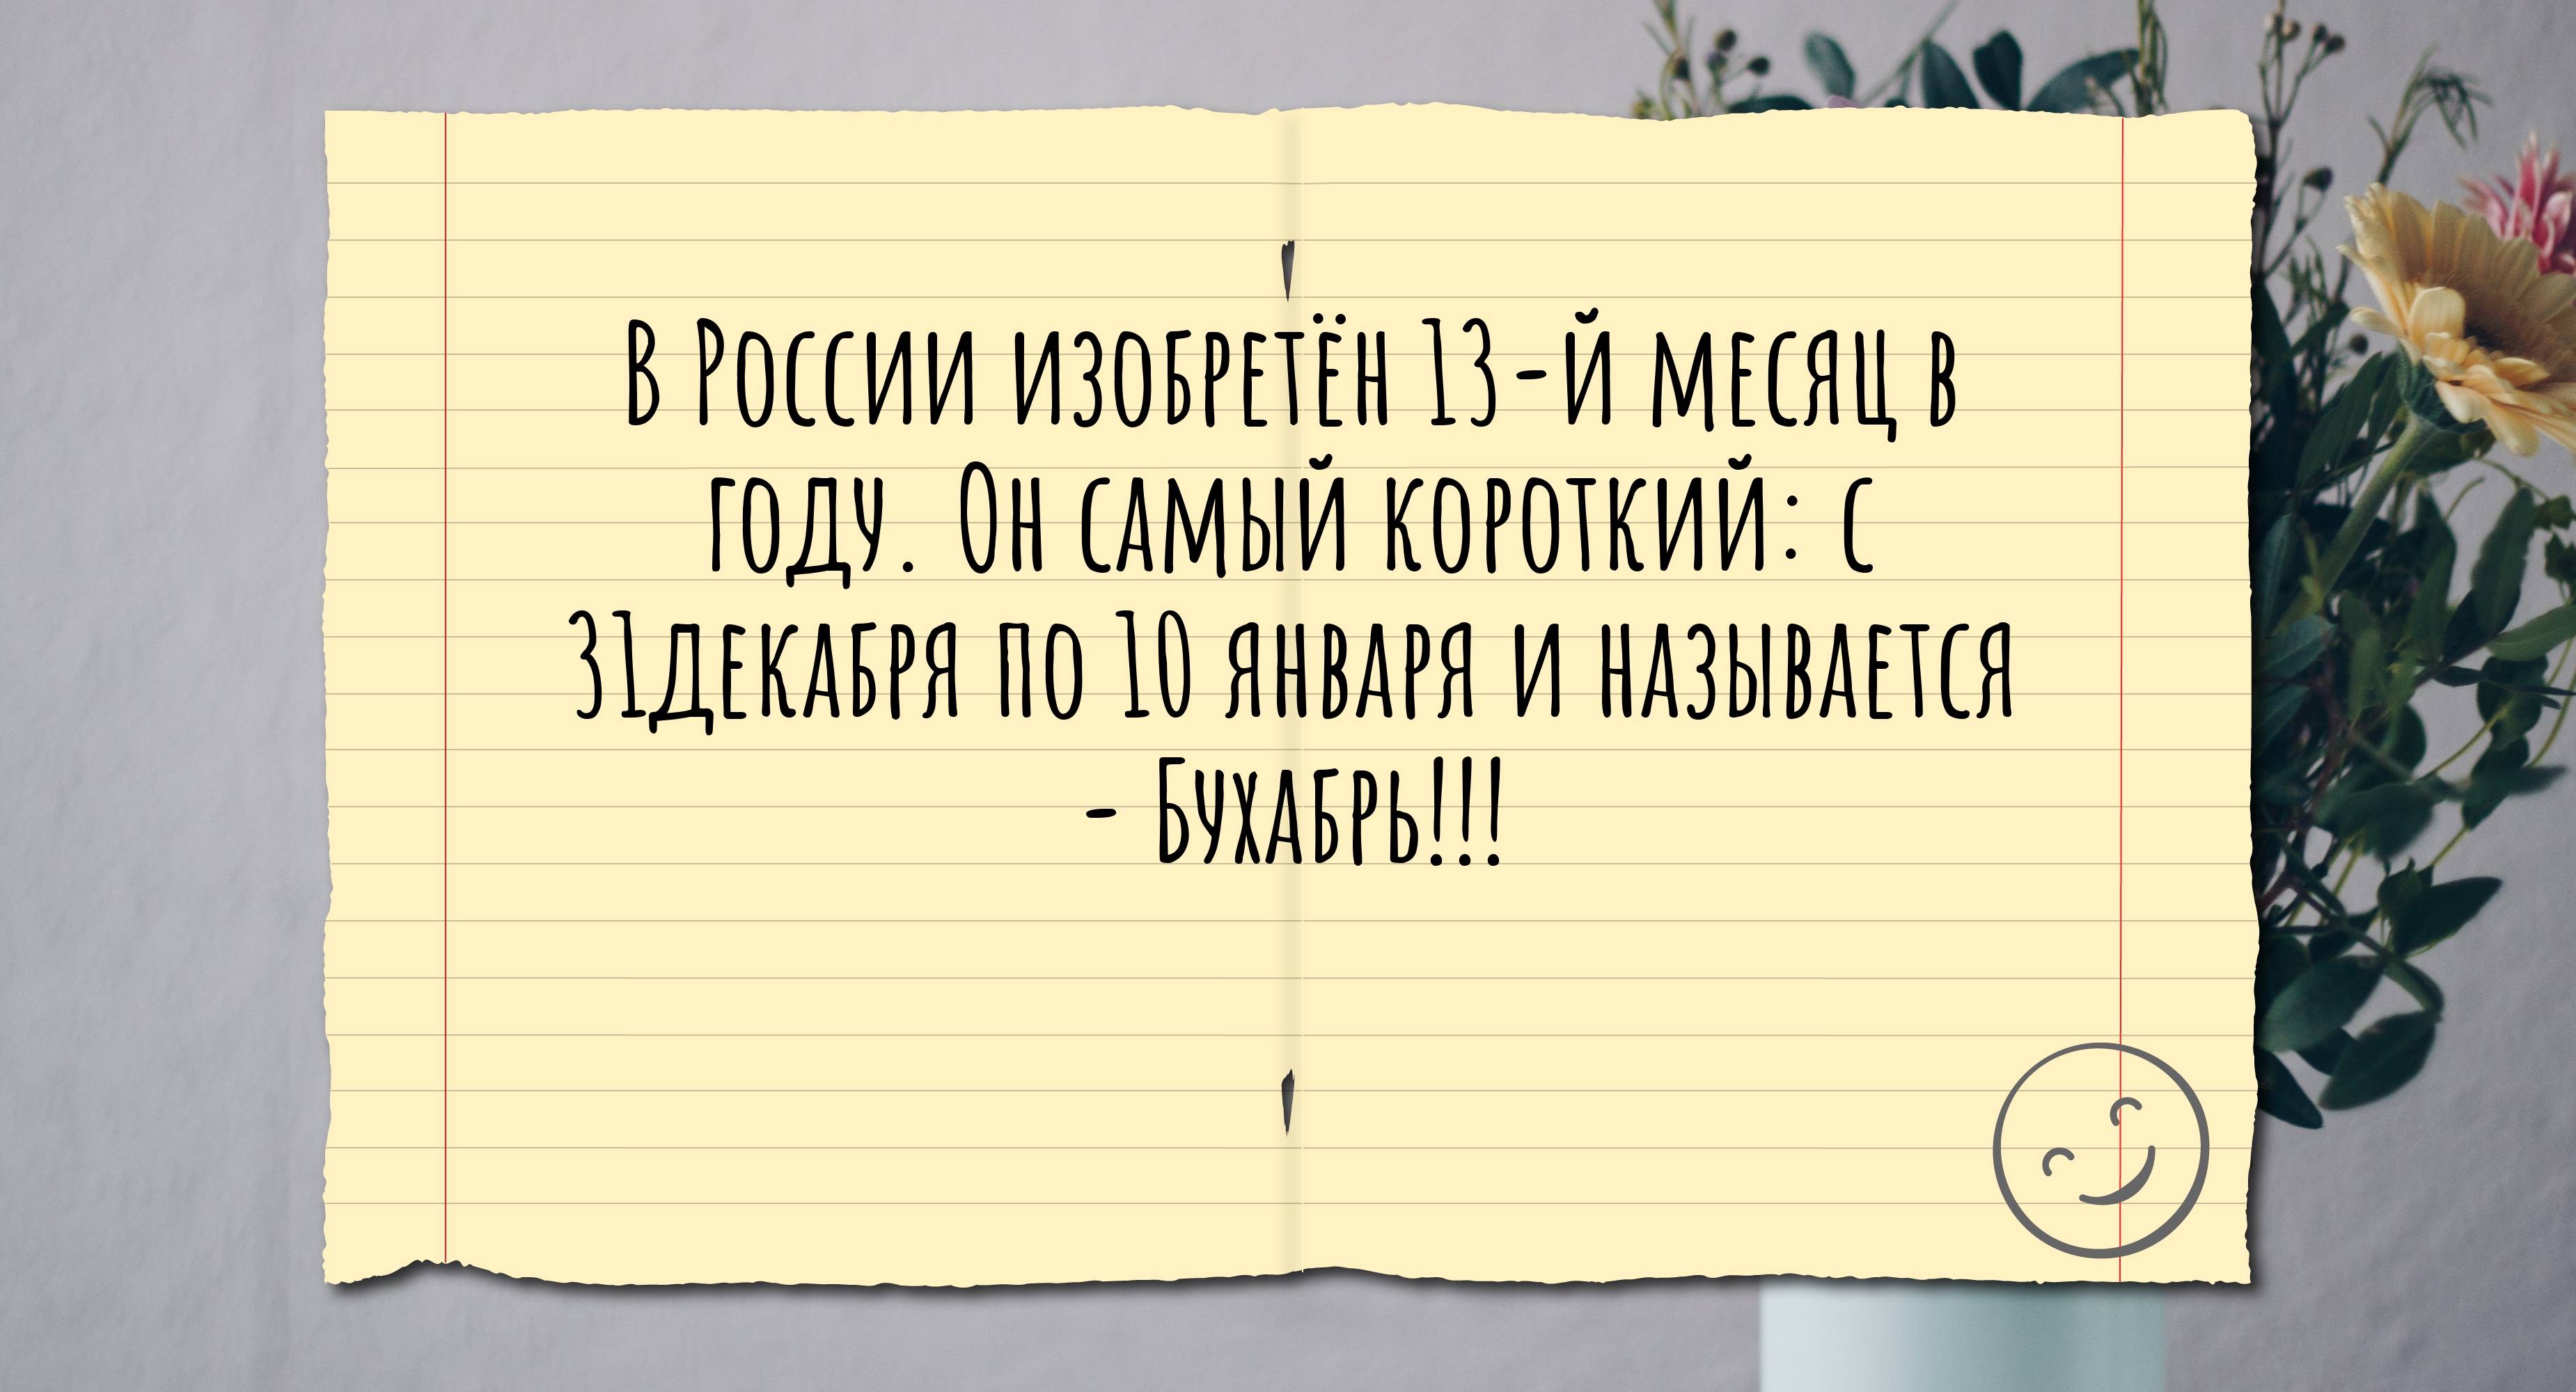 В России изобретён 13-й месяц в году. Он самый короткий: с 31декабря по 10 января и называется - Бухабрь!!!